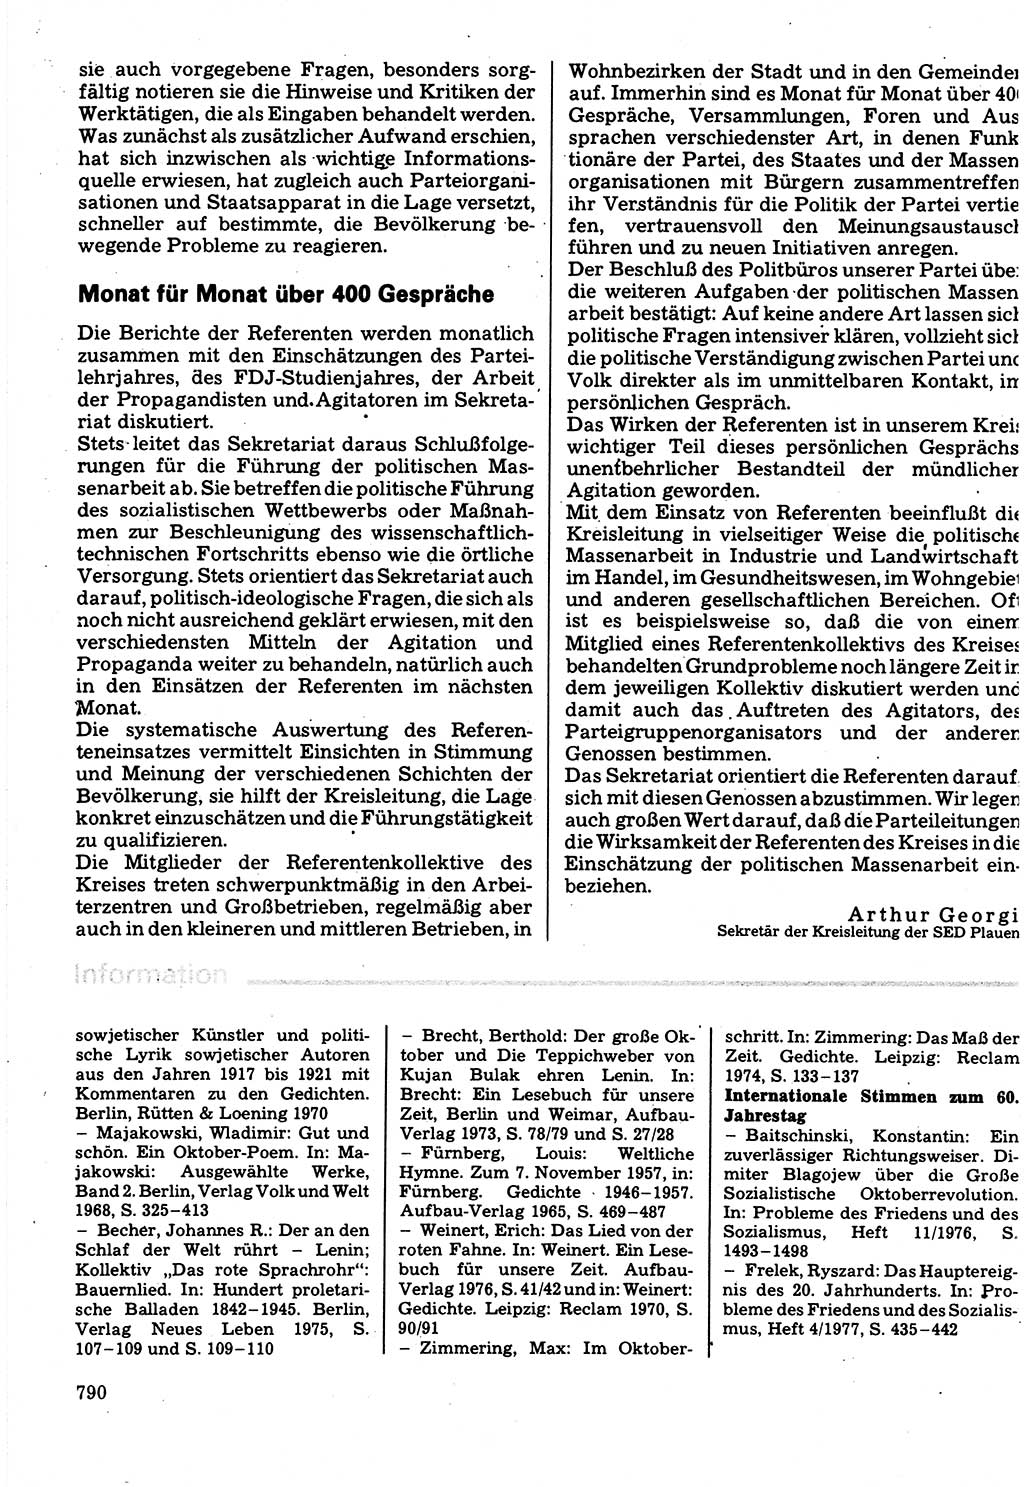 Neuer Weg (NW), Organ des Zentralkomitees (ZK) der SED (Sozialistische Einheitspartei Deutschlands) für Fragen des Parteilebens, 32. Jahrgang [Deutsche Demokratische Republik (DDR)] 1977, Seite 790 (NW ZK SED DDR 1977, S. 790)